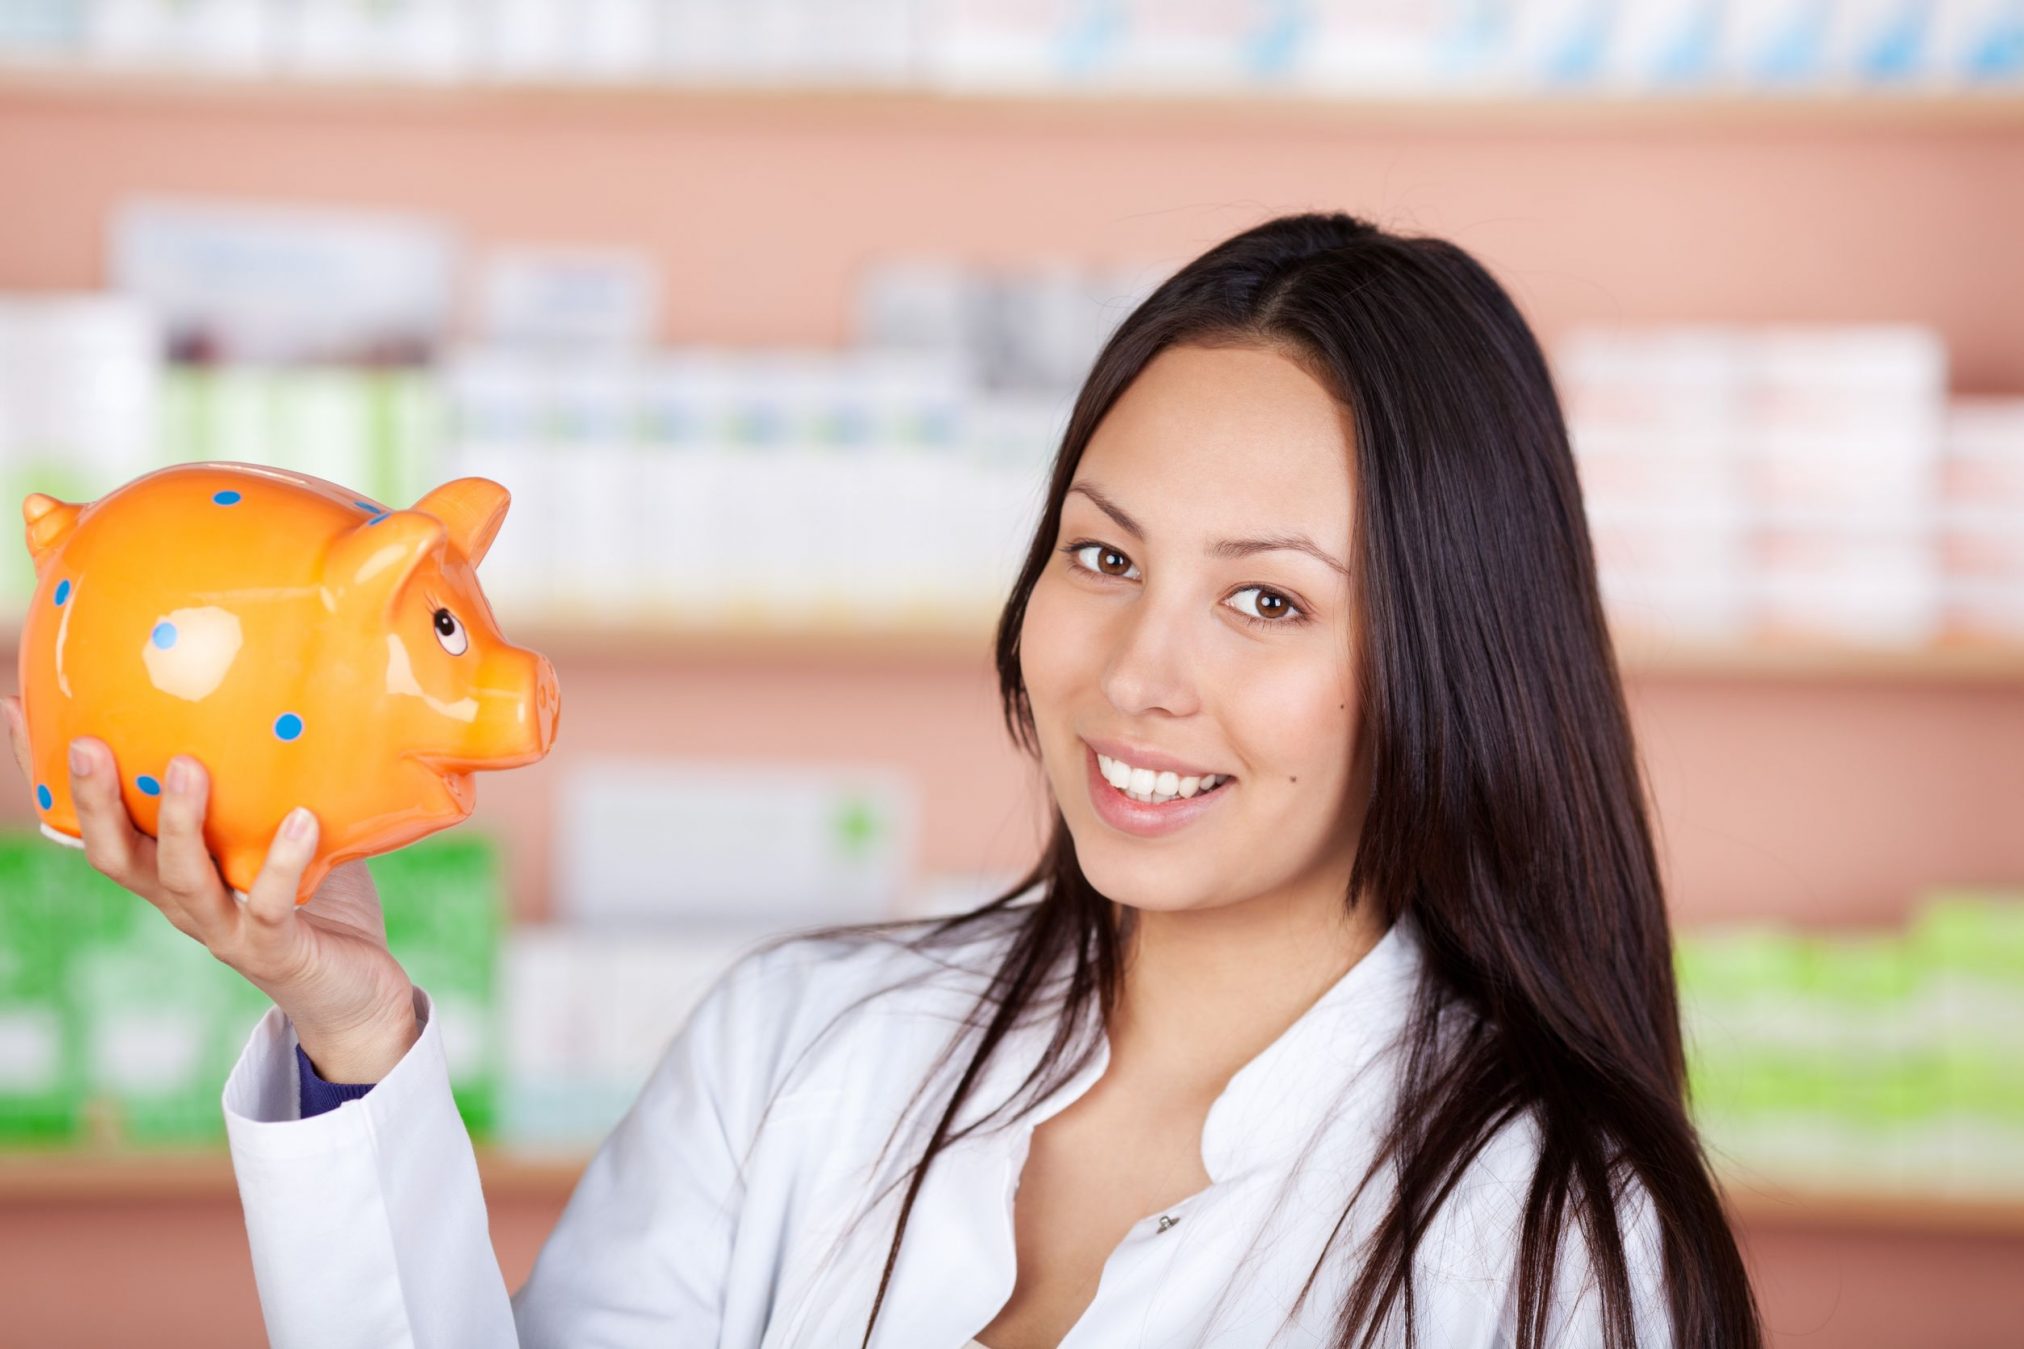 pharmacist holding piggy bank